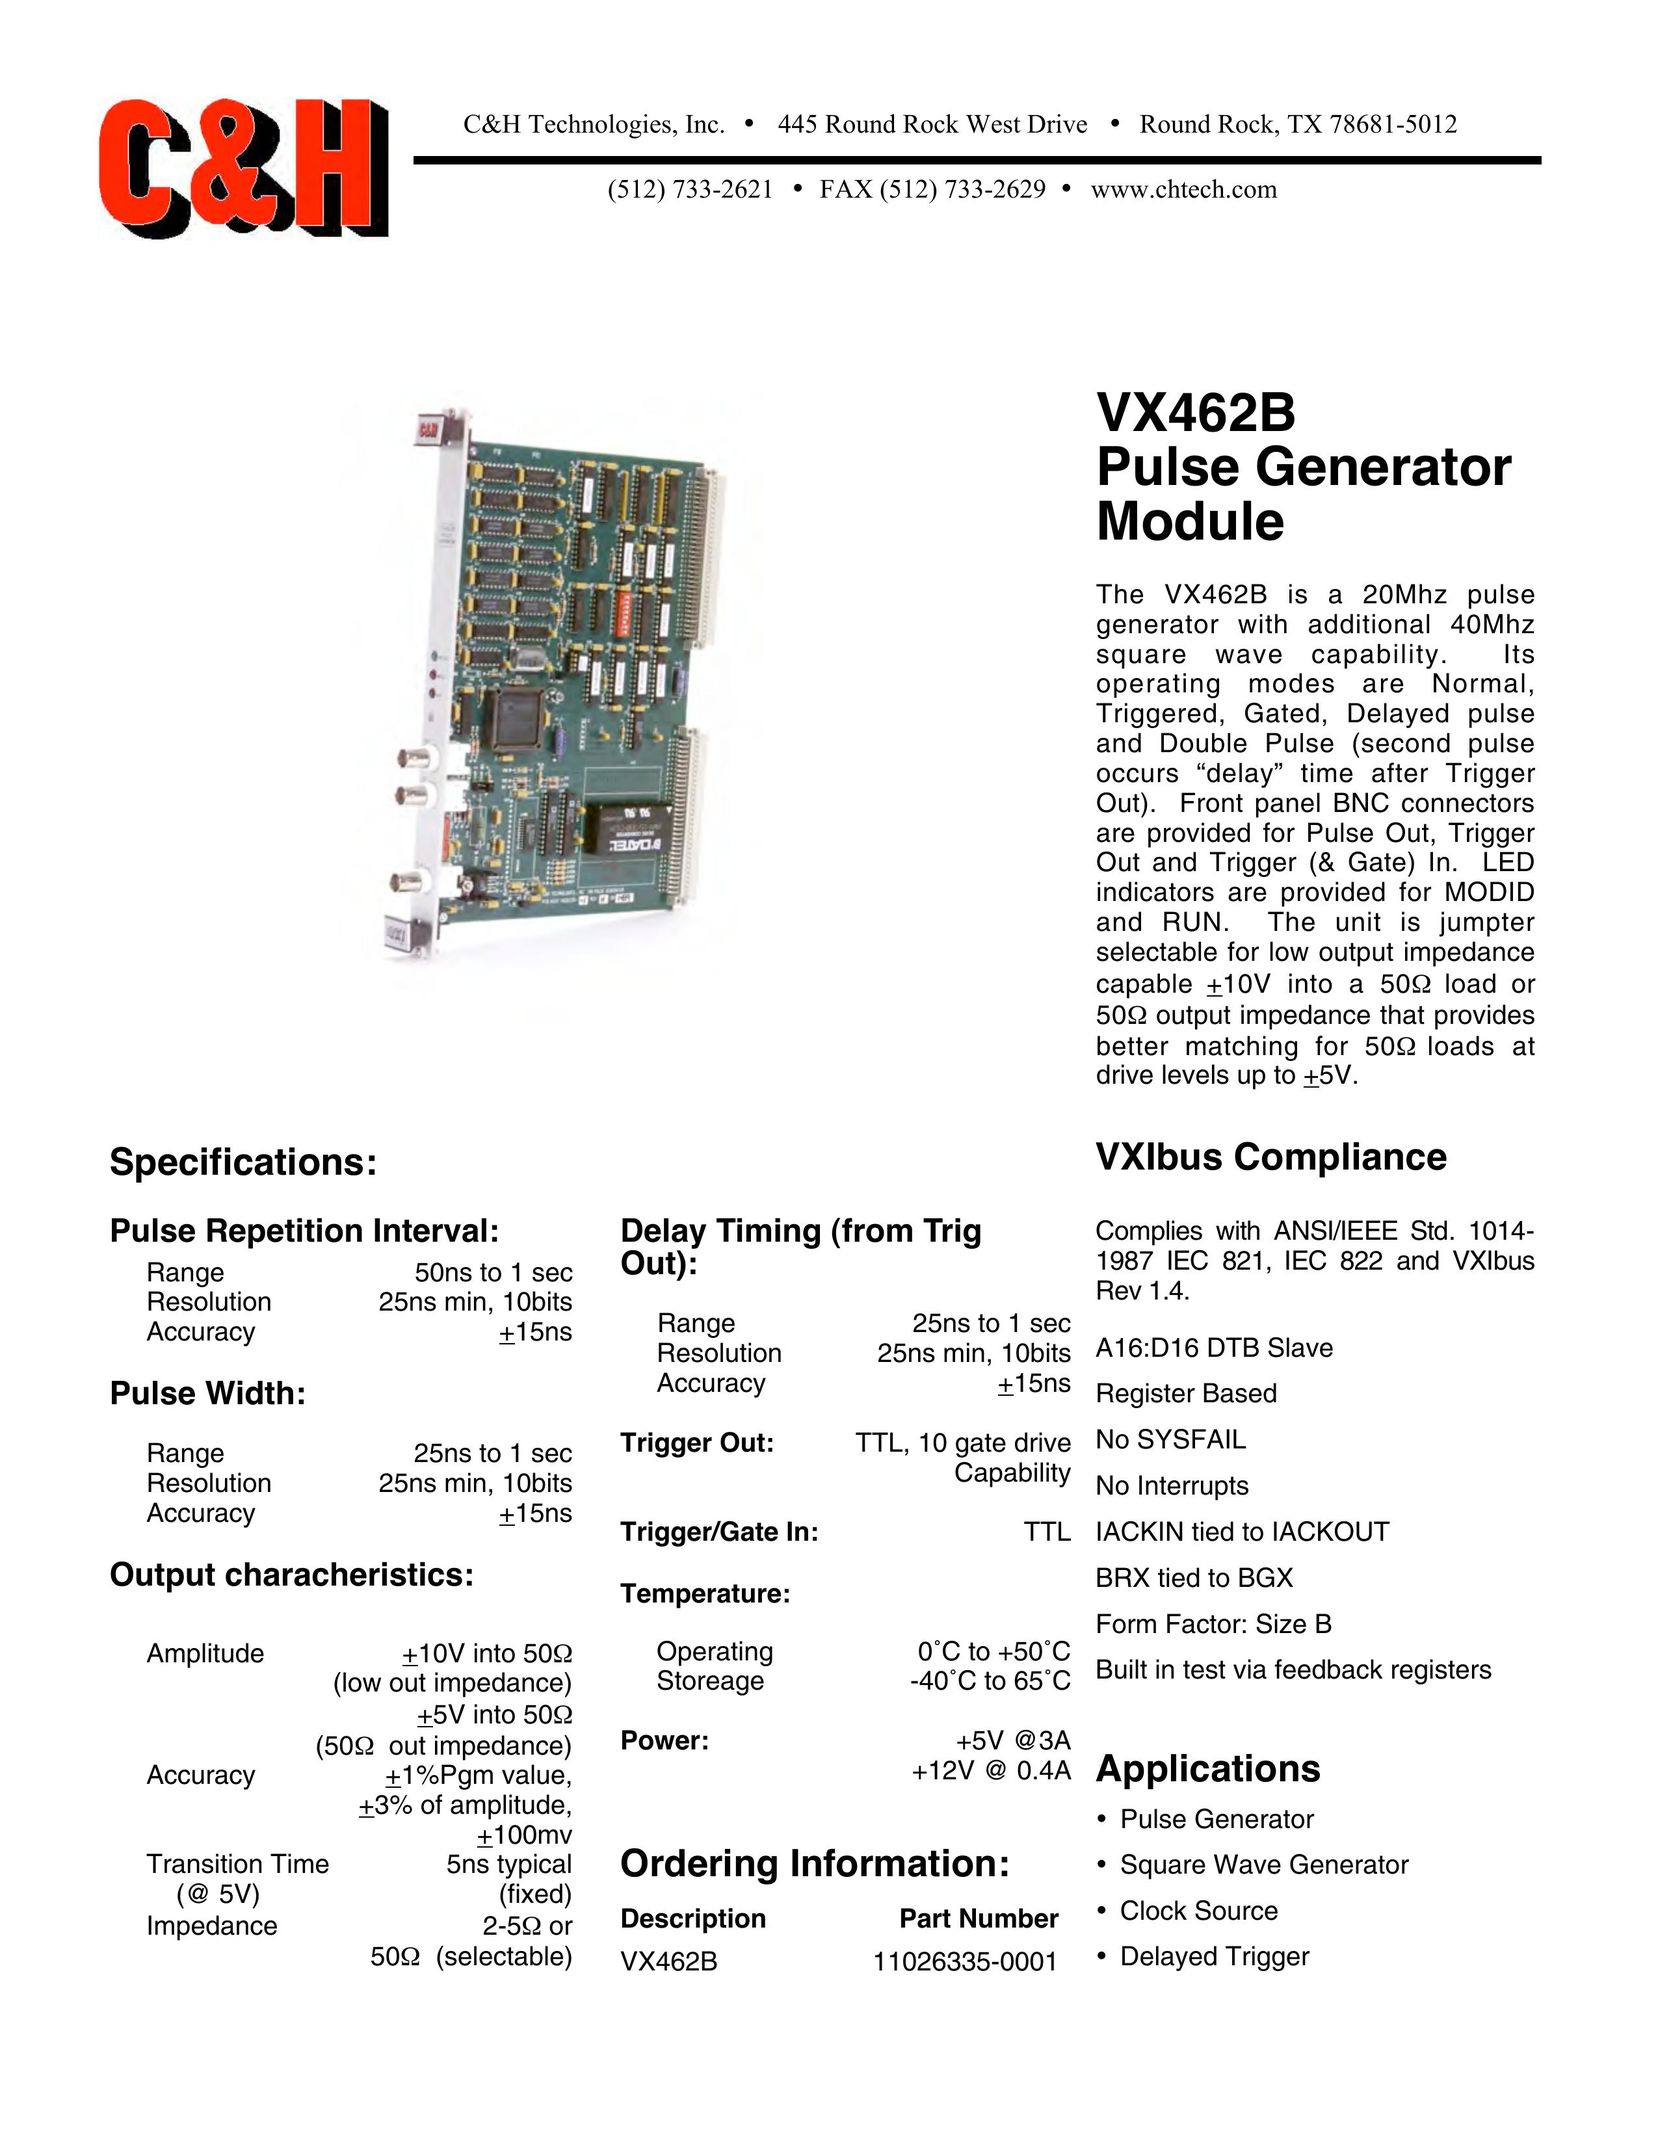 CH Tech VX462B Network Card User Manual